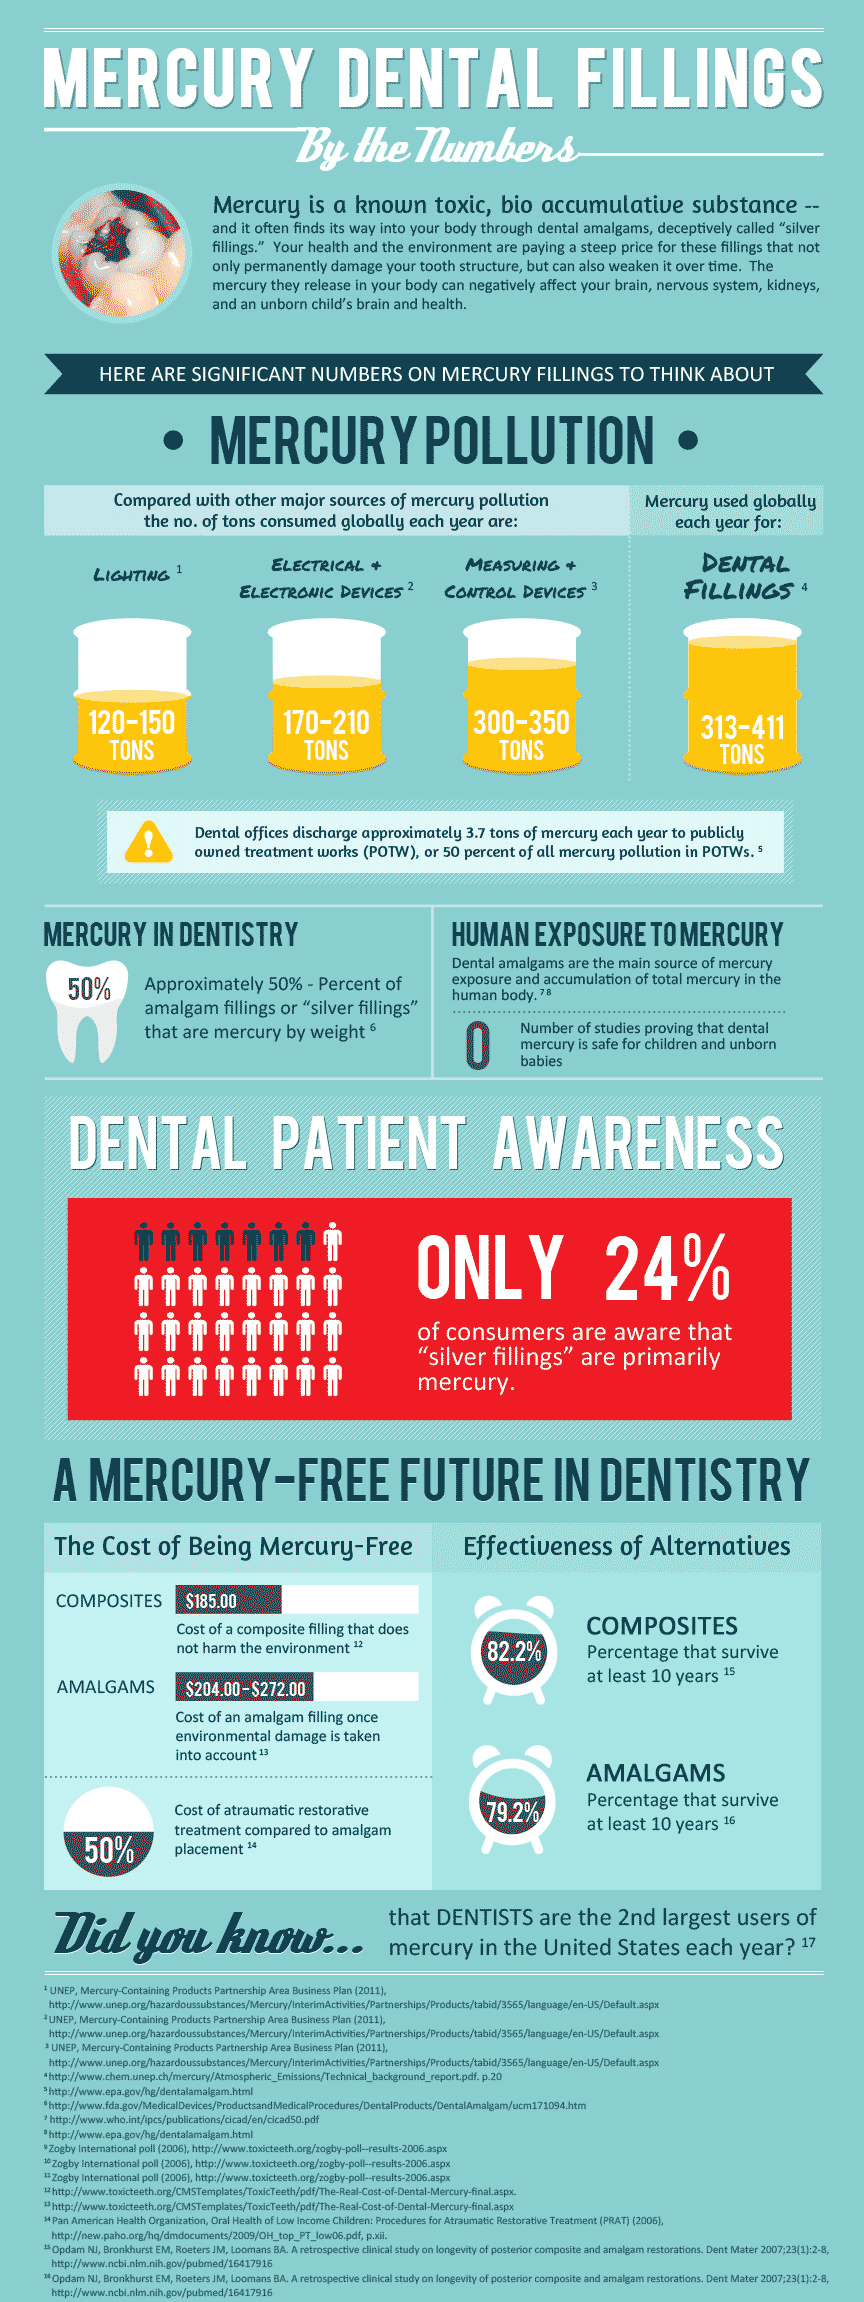 dental-fillings-infographic